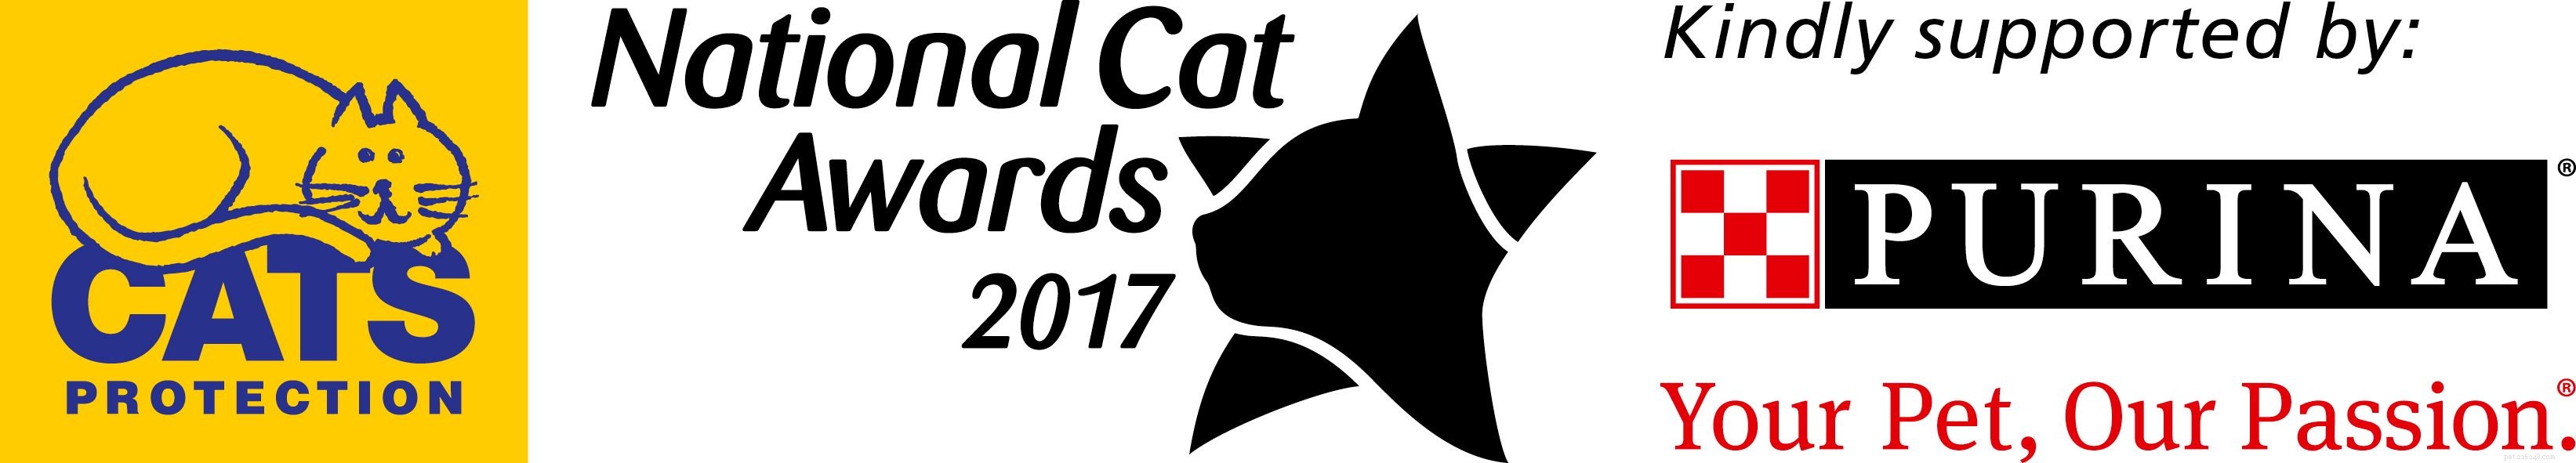 Познакомьтесь с финалистами Национальной кошачьей премии 2017 года в категории «Самая заботливая кошка»!